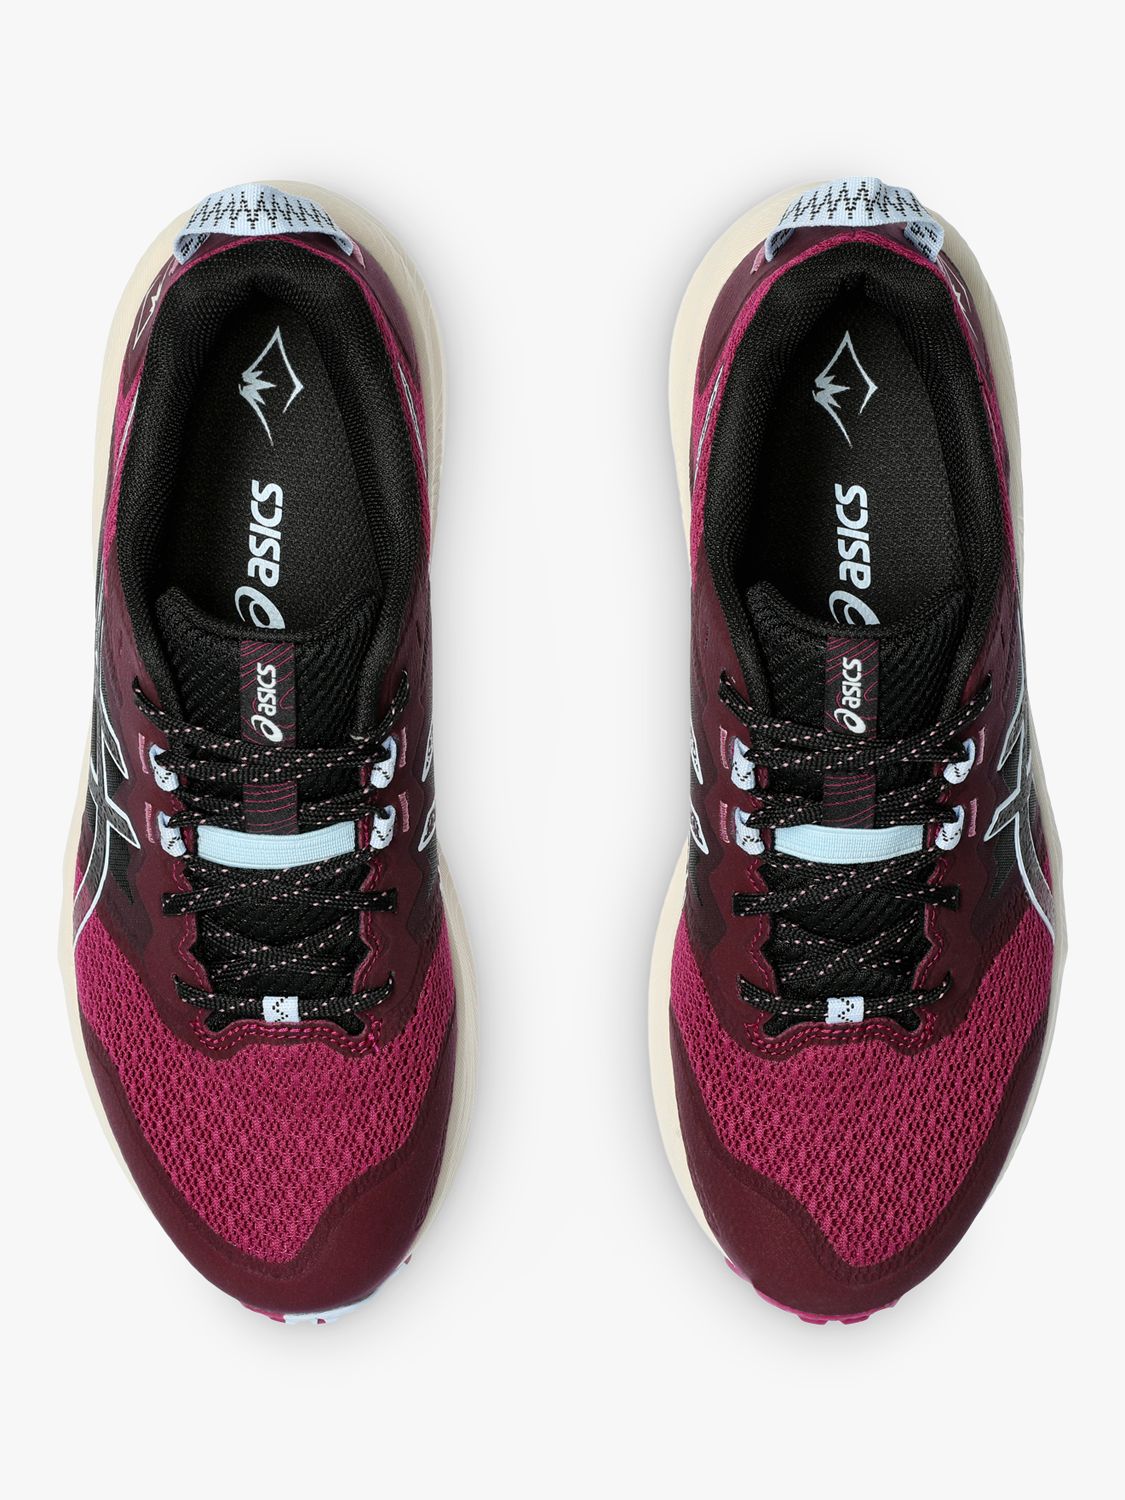 ASICS GEL-TRABUCO™ TERRA 2 Women's Running Shoes, Blackberry/Blue, 7.5